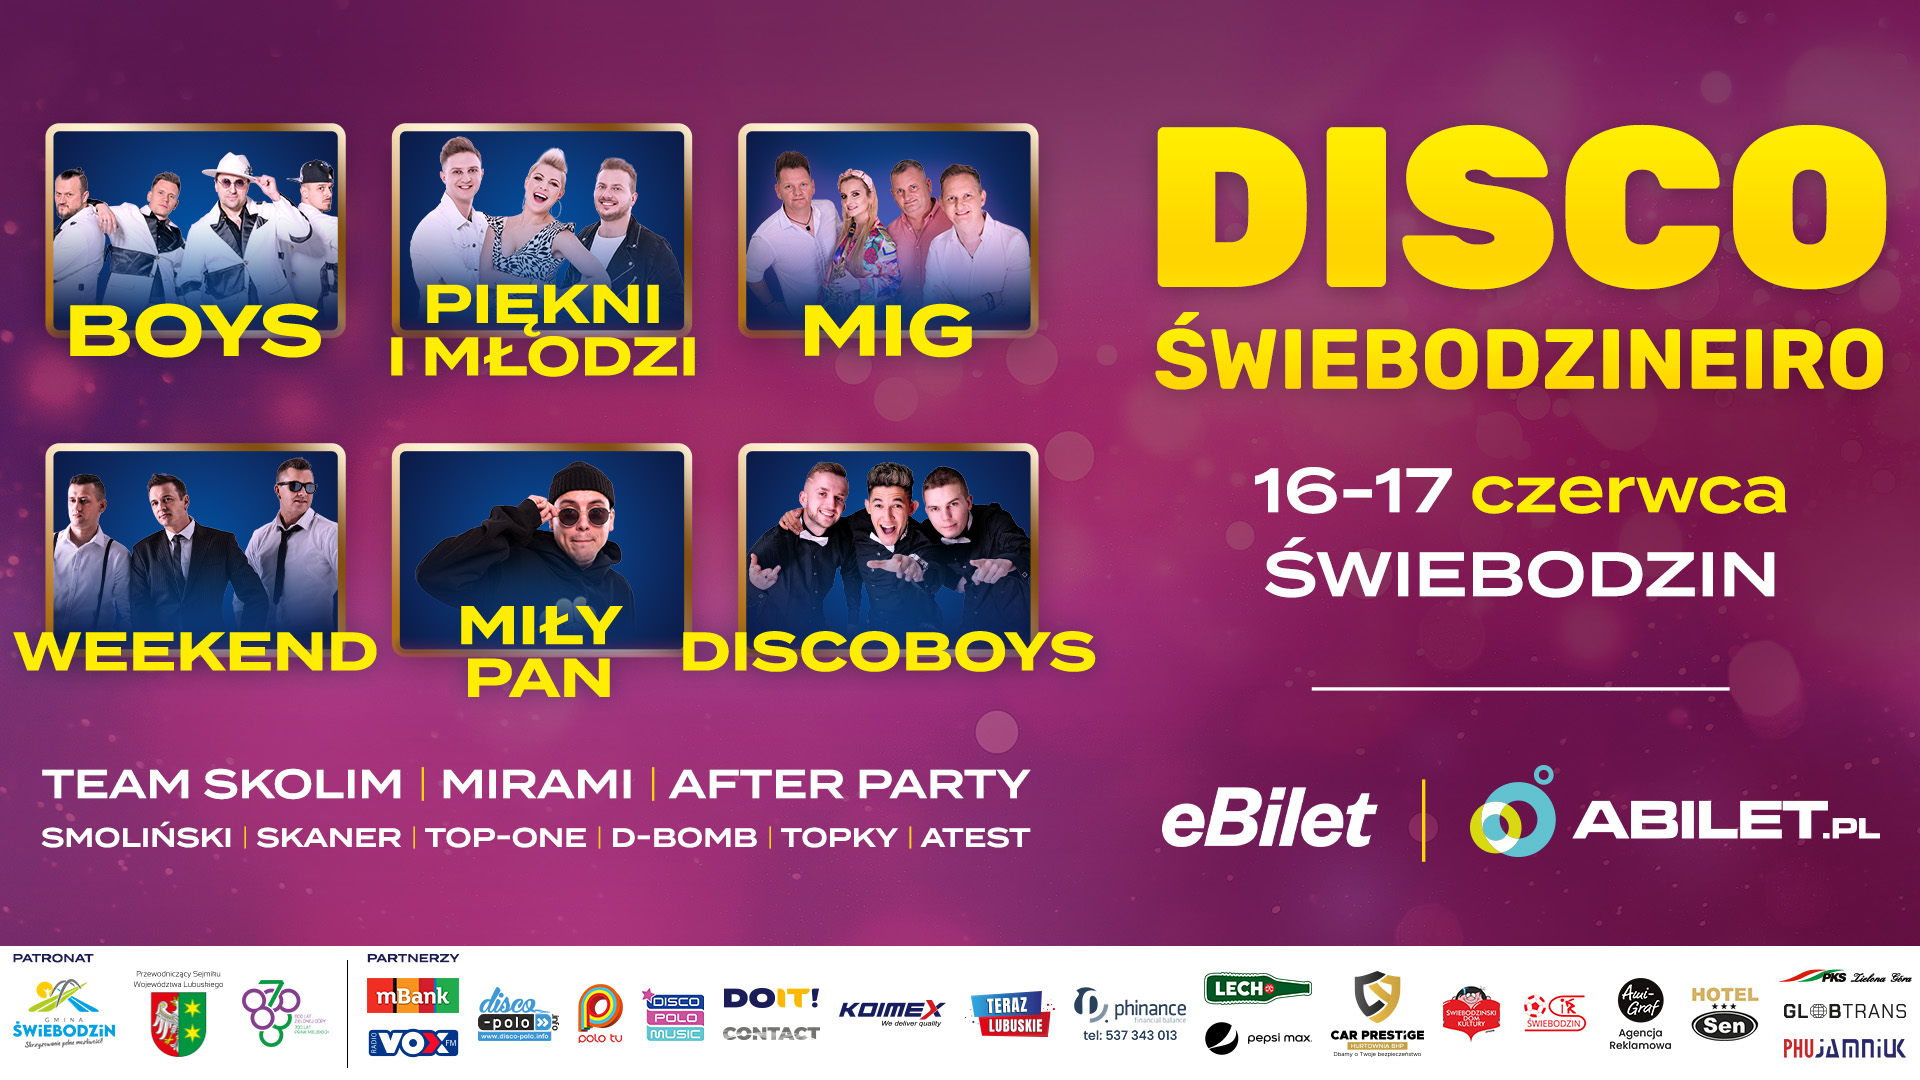 Disco Świebodzineiro: Jeden z największych festiwali Disco Polo w Polsce! Zobacz kto wystąpi